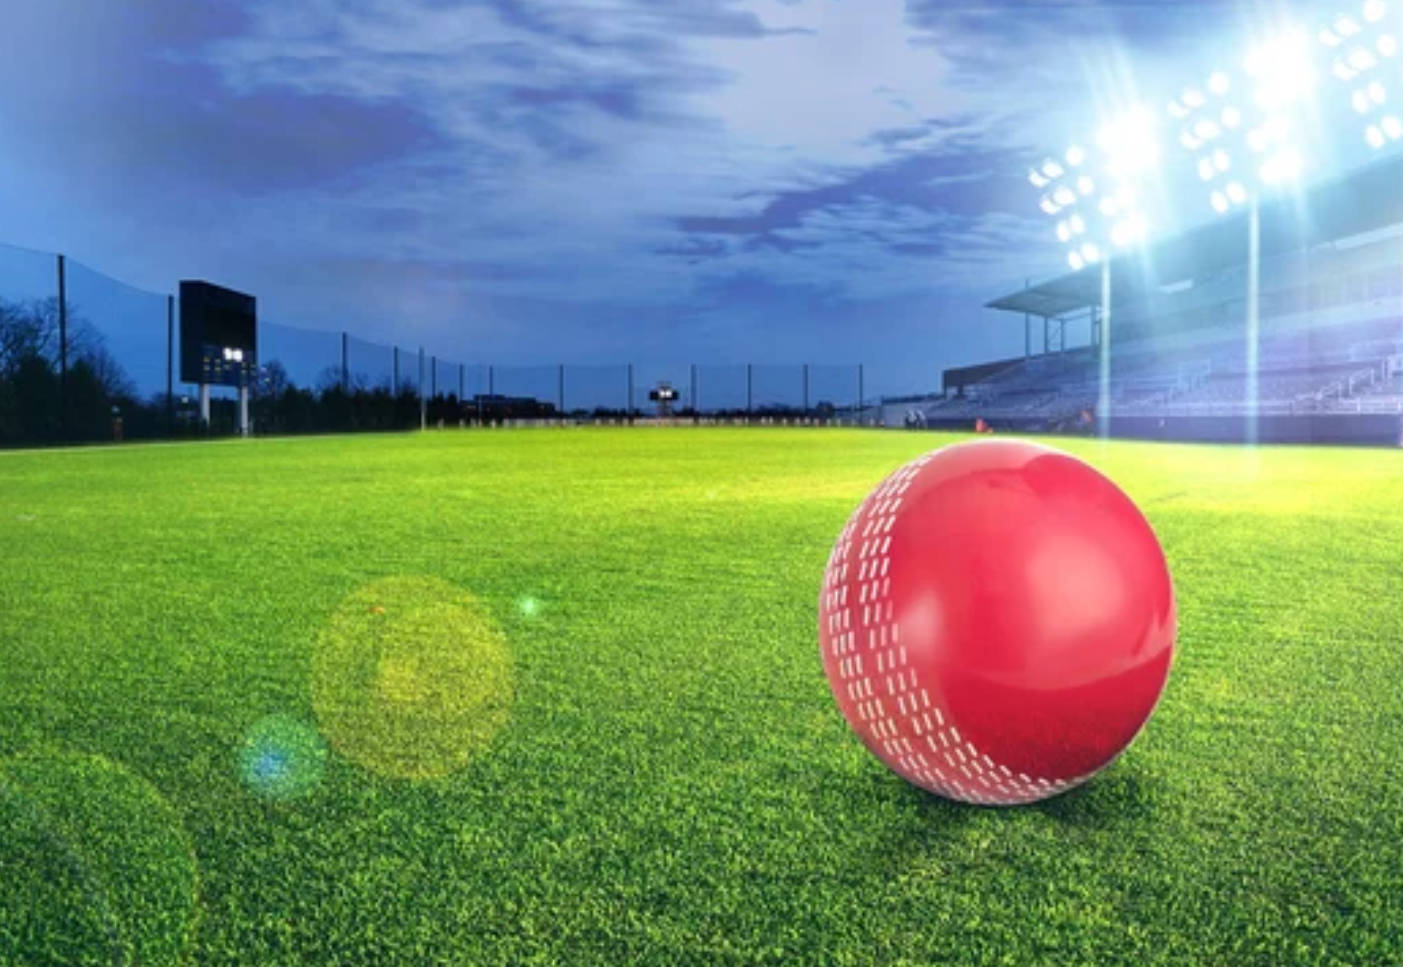 Breathtaking Cricket Ground Under Dazzling Lights